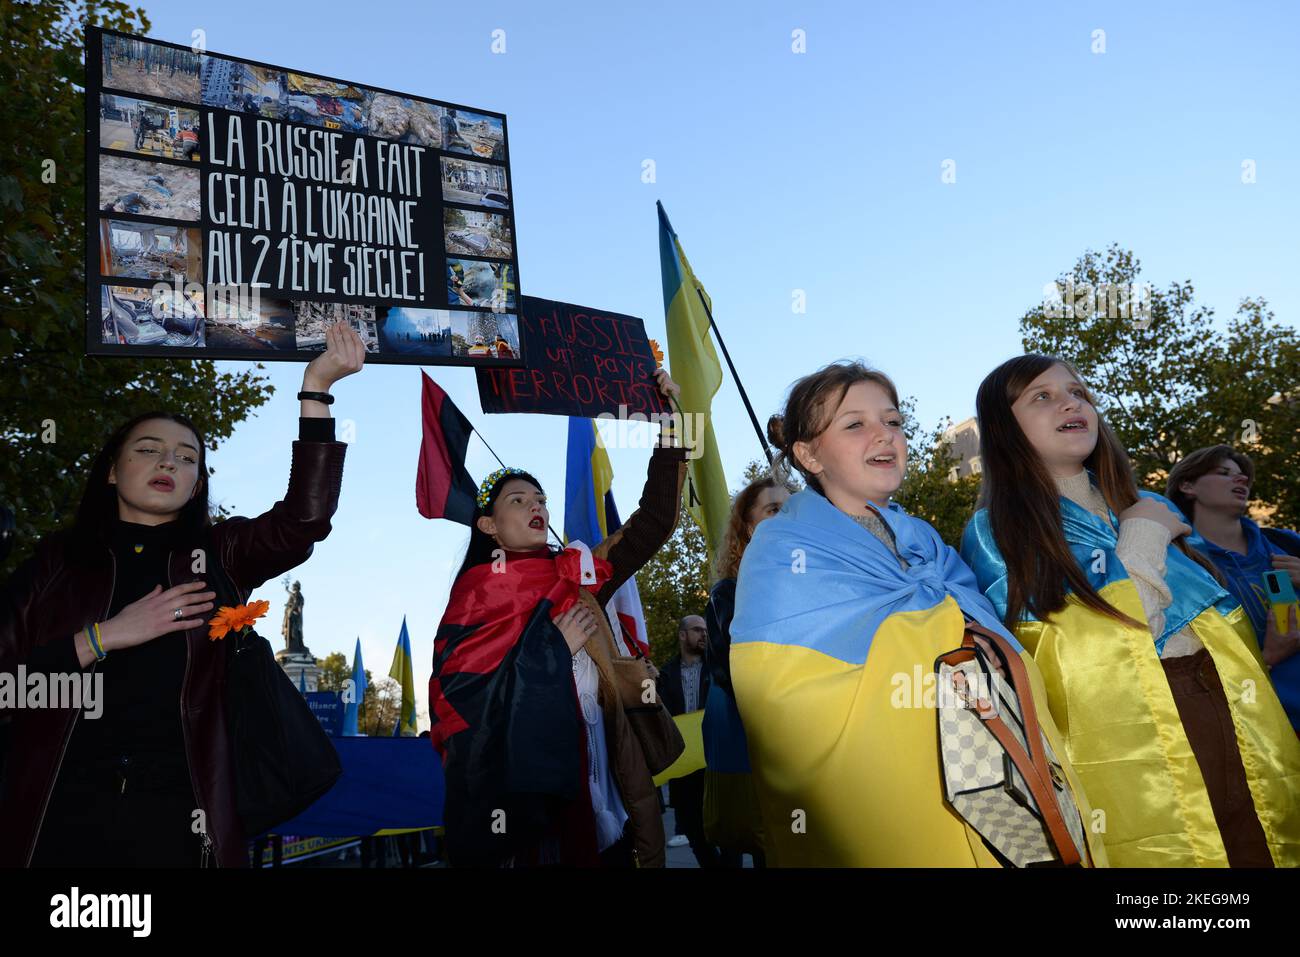 La diaspora ukrainienne est toujours très Active à Paris, tous les samedis une Manifestation est organisée par l'Union des ukrainiens de France Stockfoto